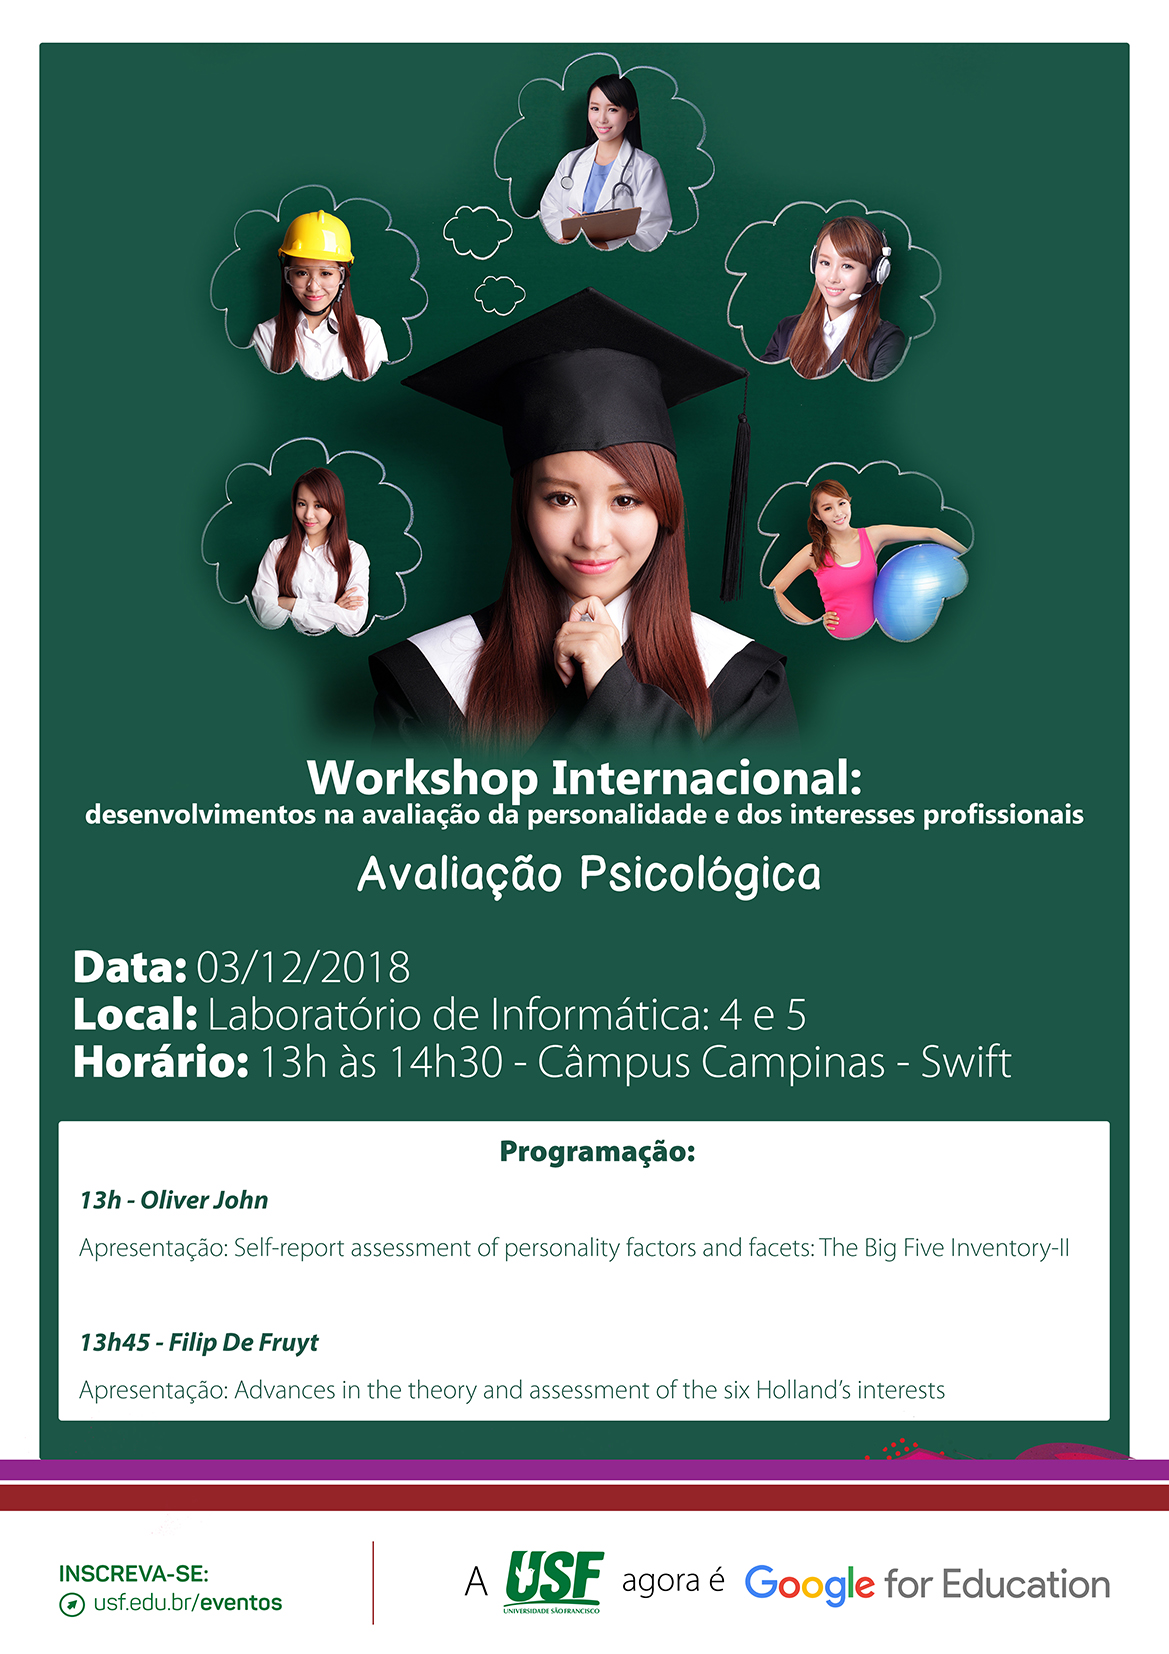 Workshop Internacional: desenvolvimentos na avaliação da personalidade e dos interesses profissionais